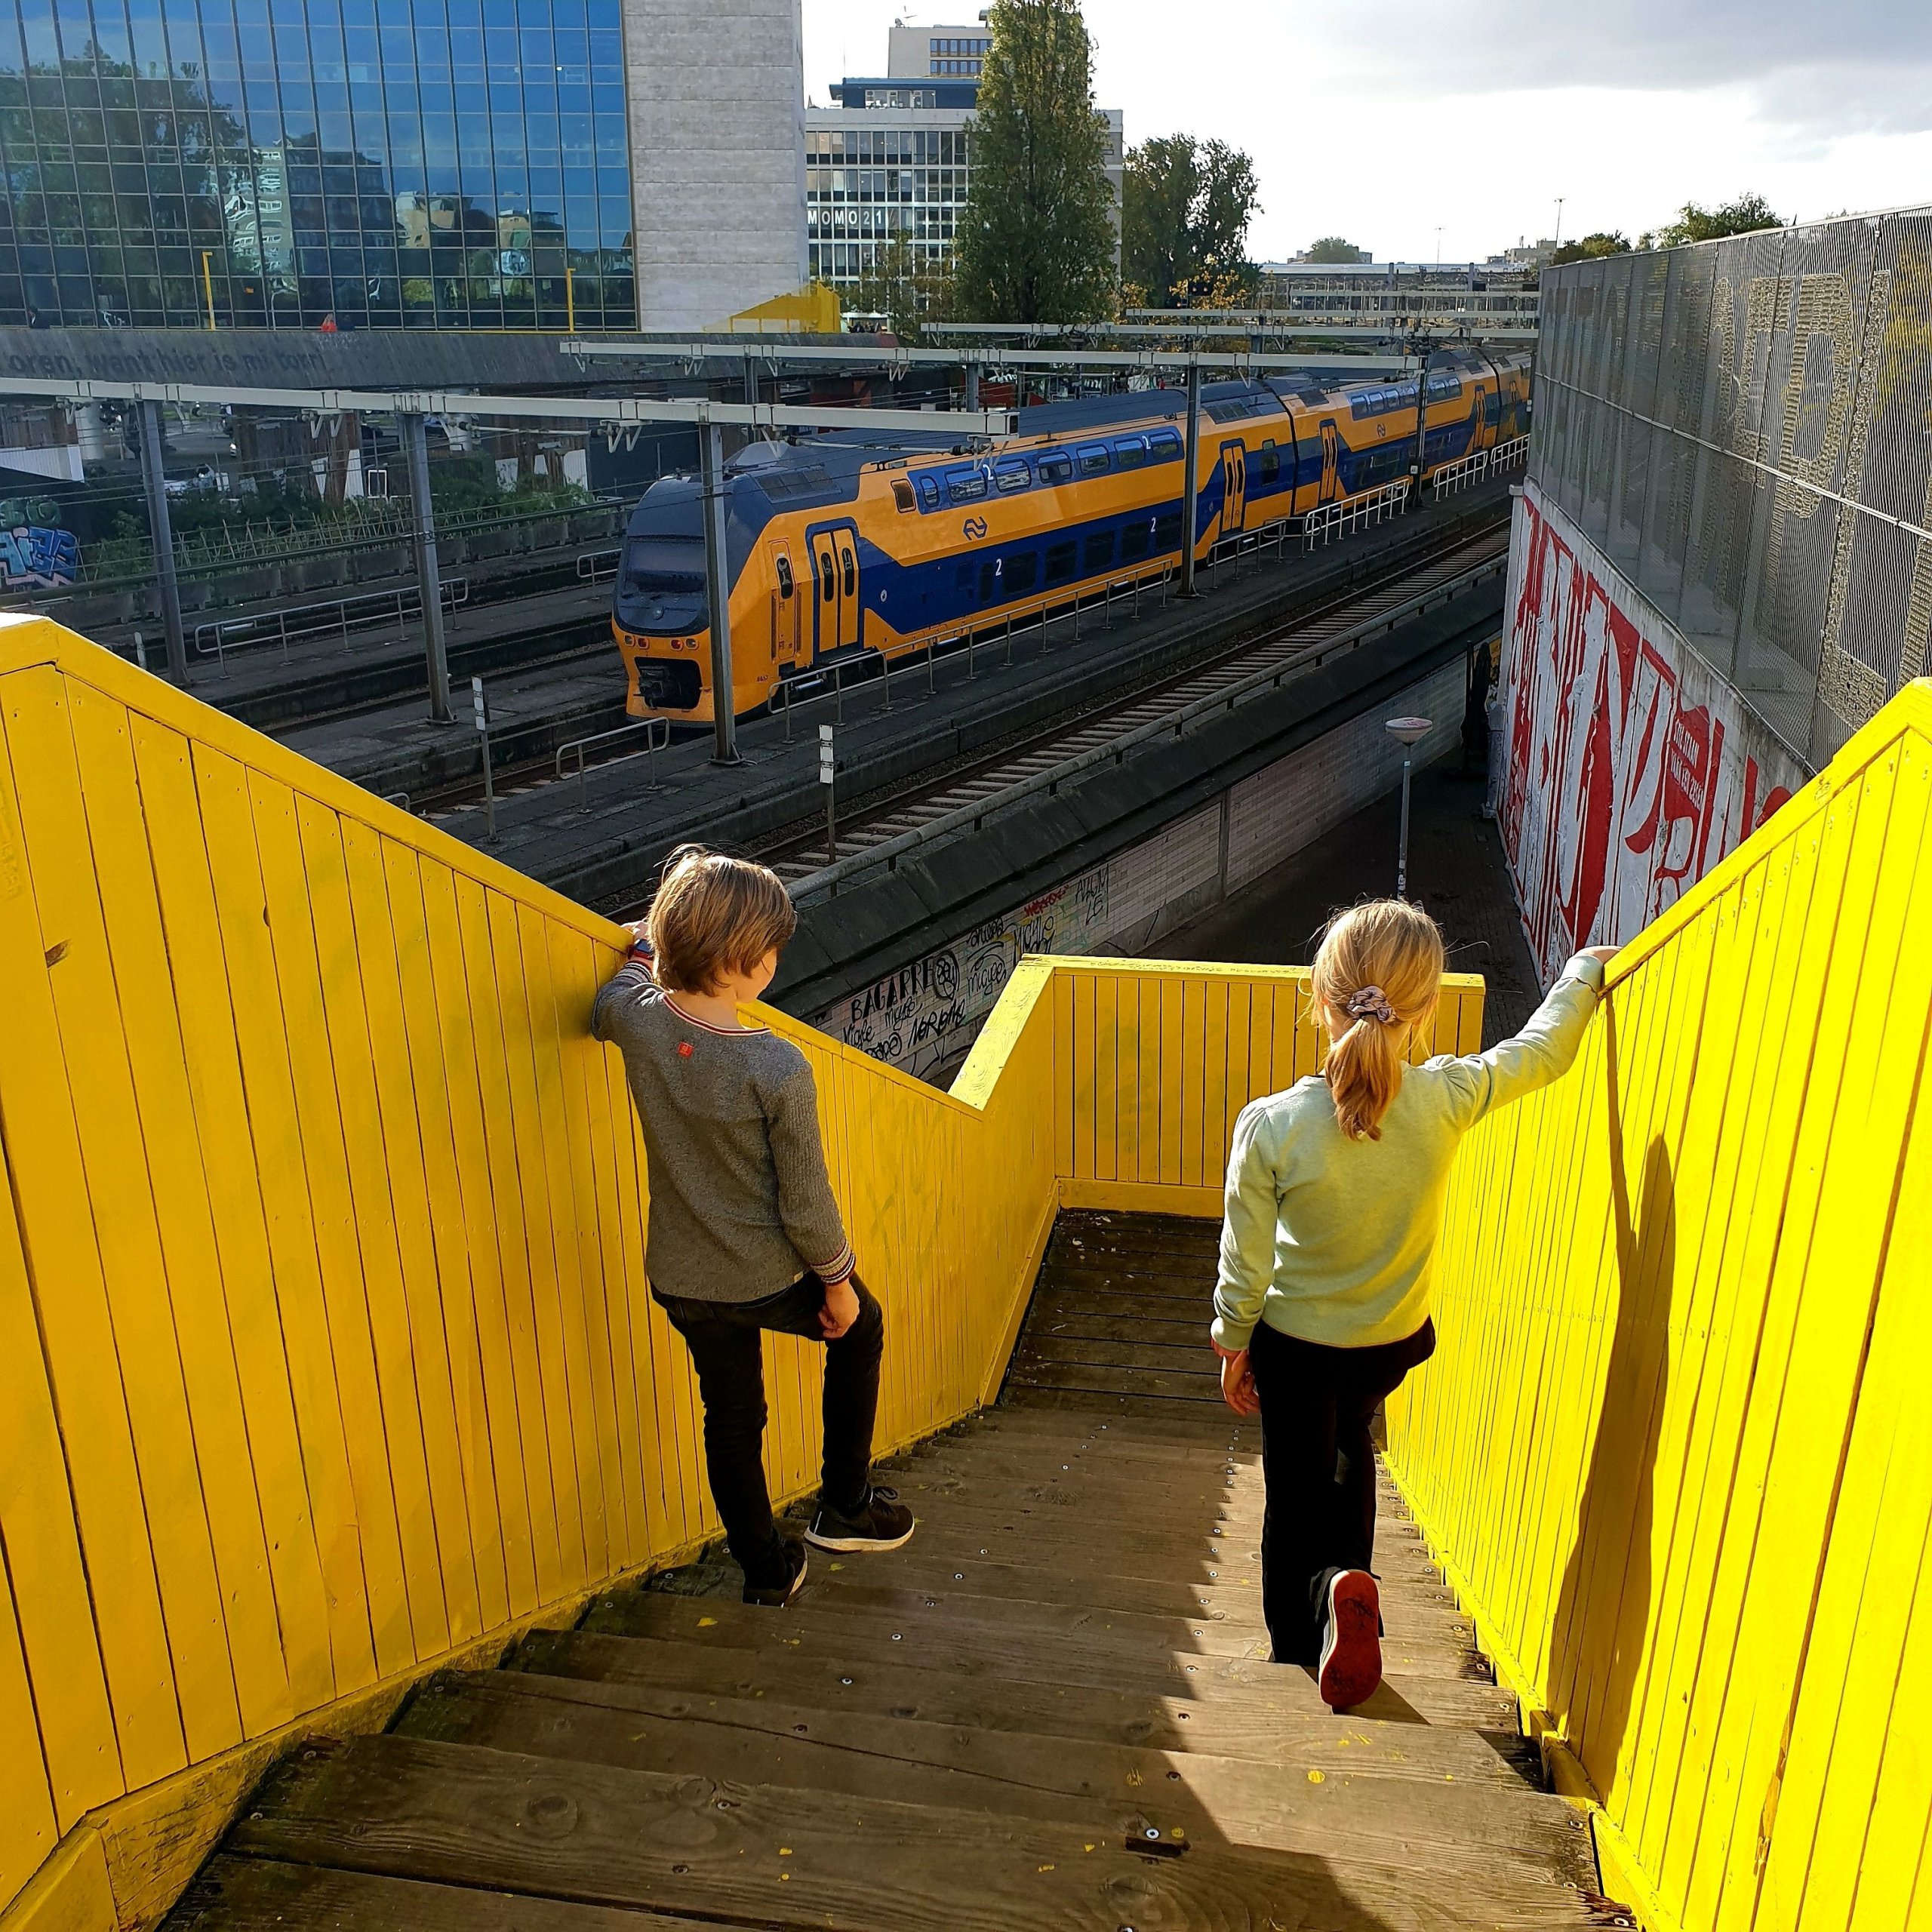 101 uitjes met tieners in Nederland en België. Wij zijn gek op street art routes. Het is een leuke creatieve manier om te wandelen met kids. En er komen steeds meer leuke street art routes bij. In dit artikel verzamelen we de leukste street art routes voor kinderen en tieners. Zoals hier in Rotterdam.